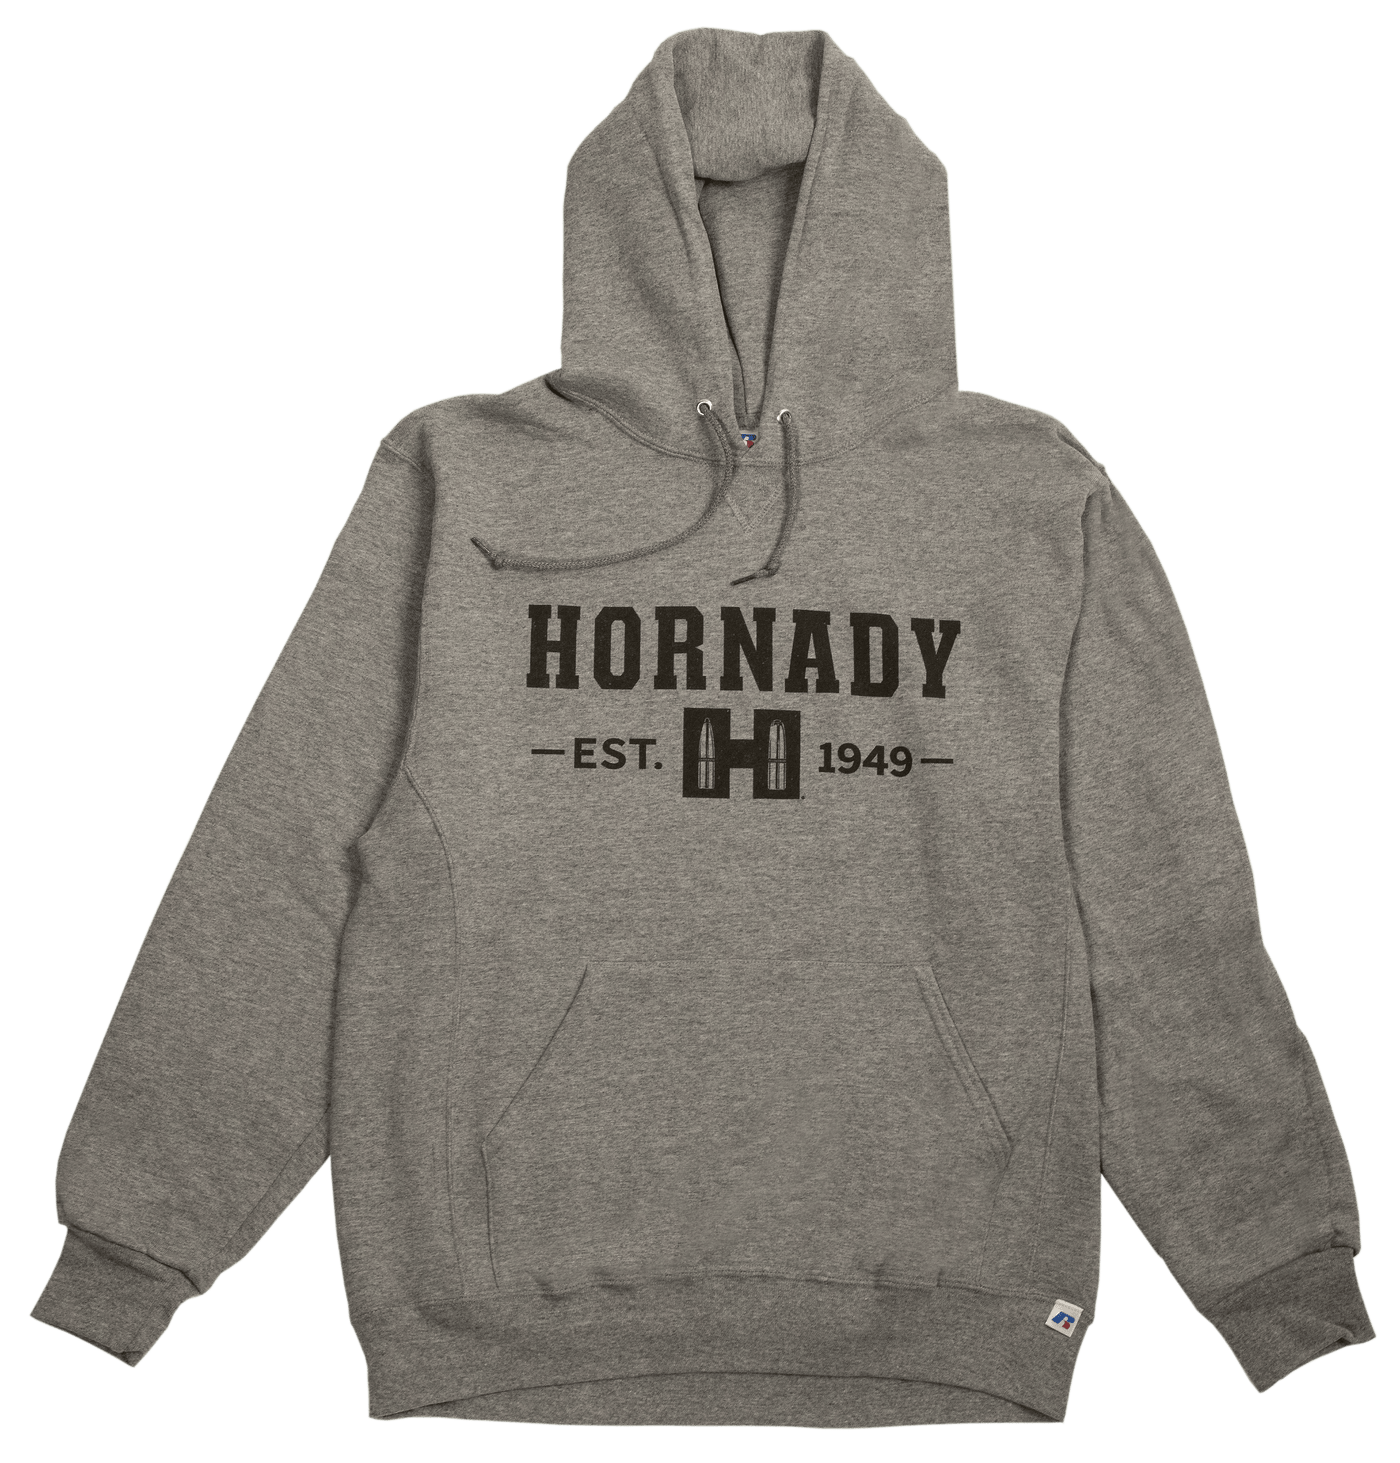 Hornady Hornady Hornady Hoodie, Horn 99595l      Hornady Gray  Hoodie Lg Accessories